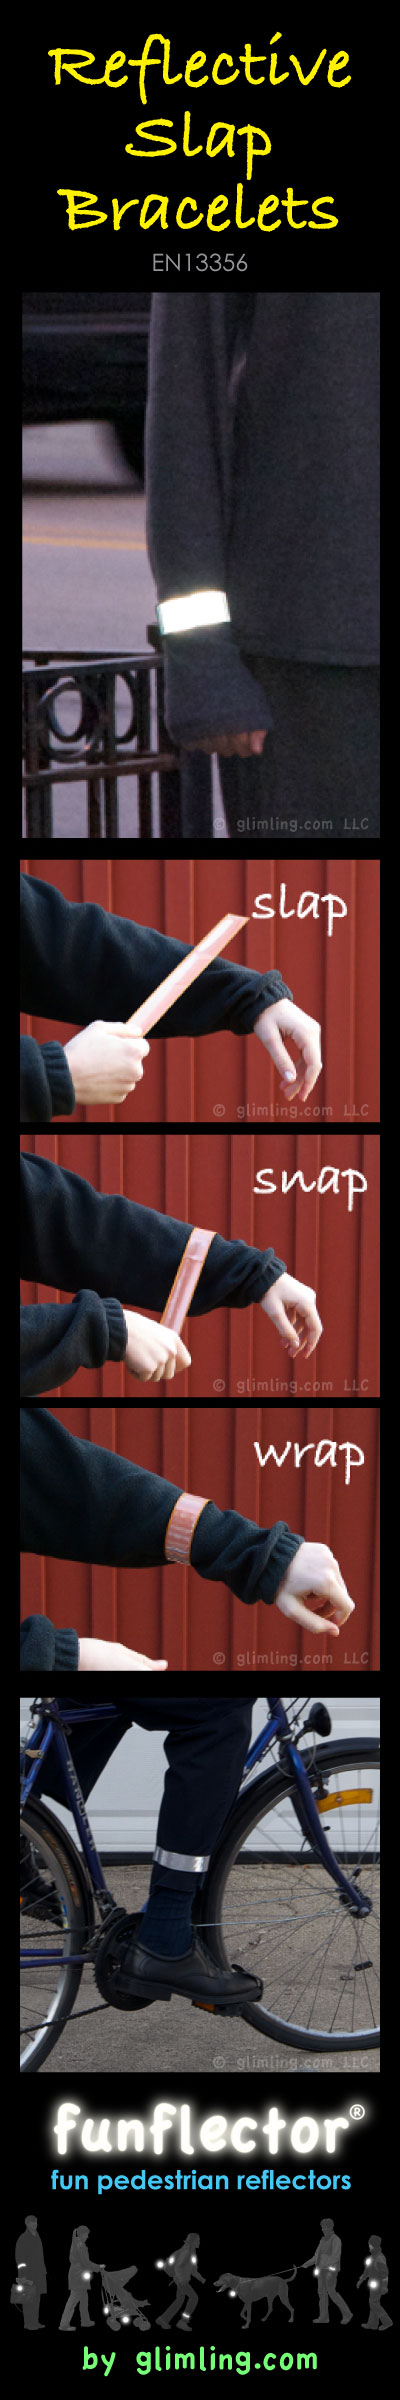 Reflective slap bracelets